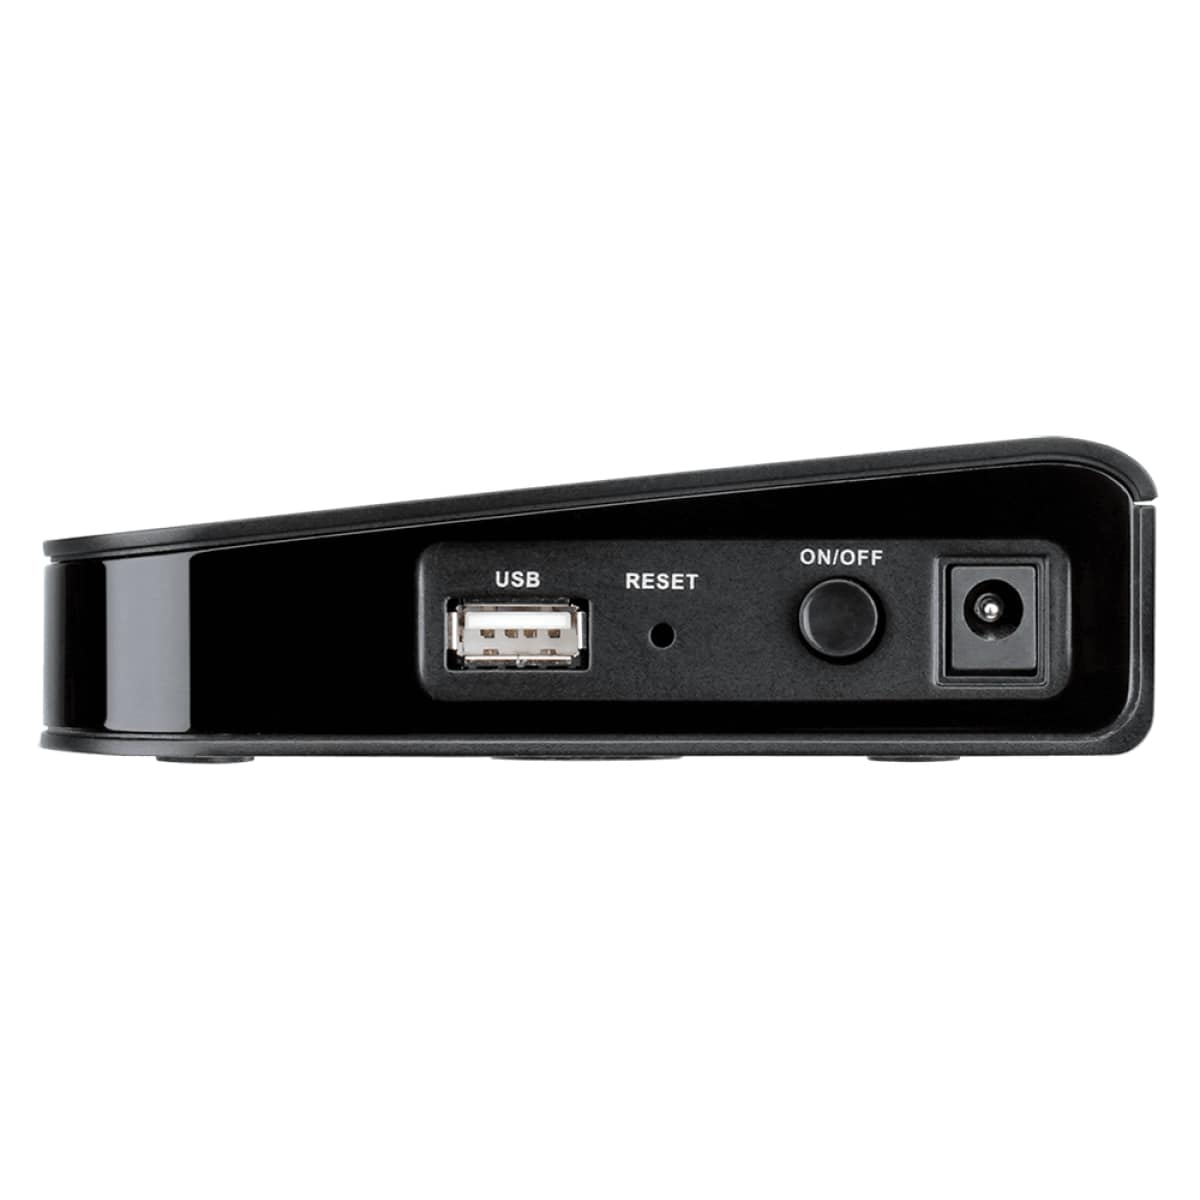 D-Link DSR-150 8-Port Fast Ethernet VPN Router